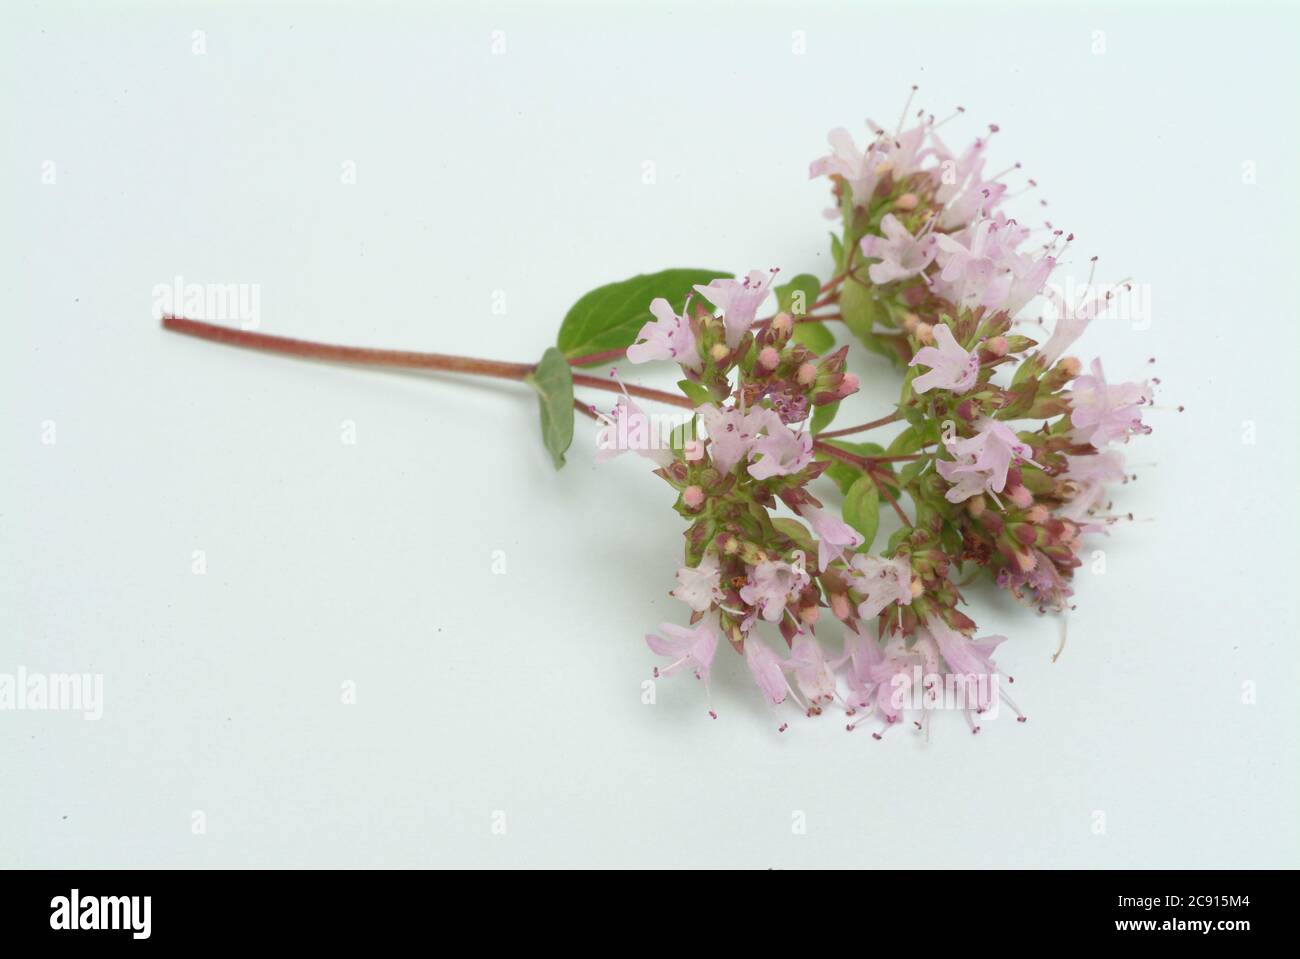 Orégano, Origanum vulgare, es una planta de flores de la familia de las menta. Los nombres triviales son Dorst, Dost, Dost Real, Common Dost, Wohlgemut o marjoram salvaje. Foto de stock